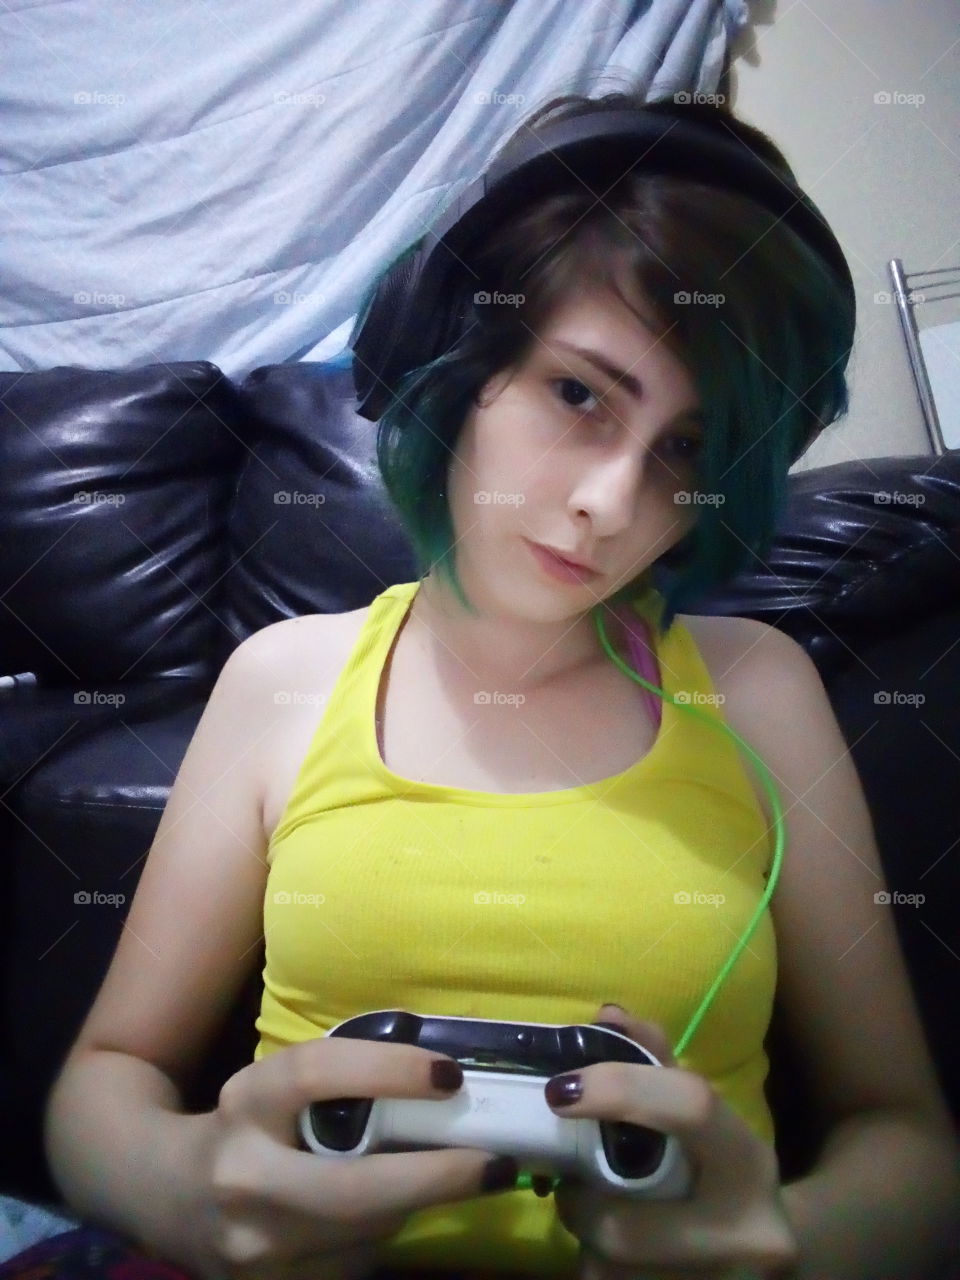 gamer girl